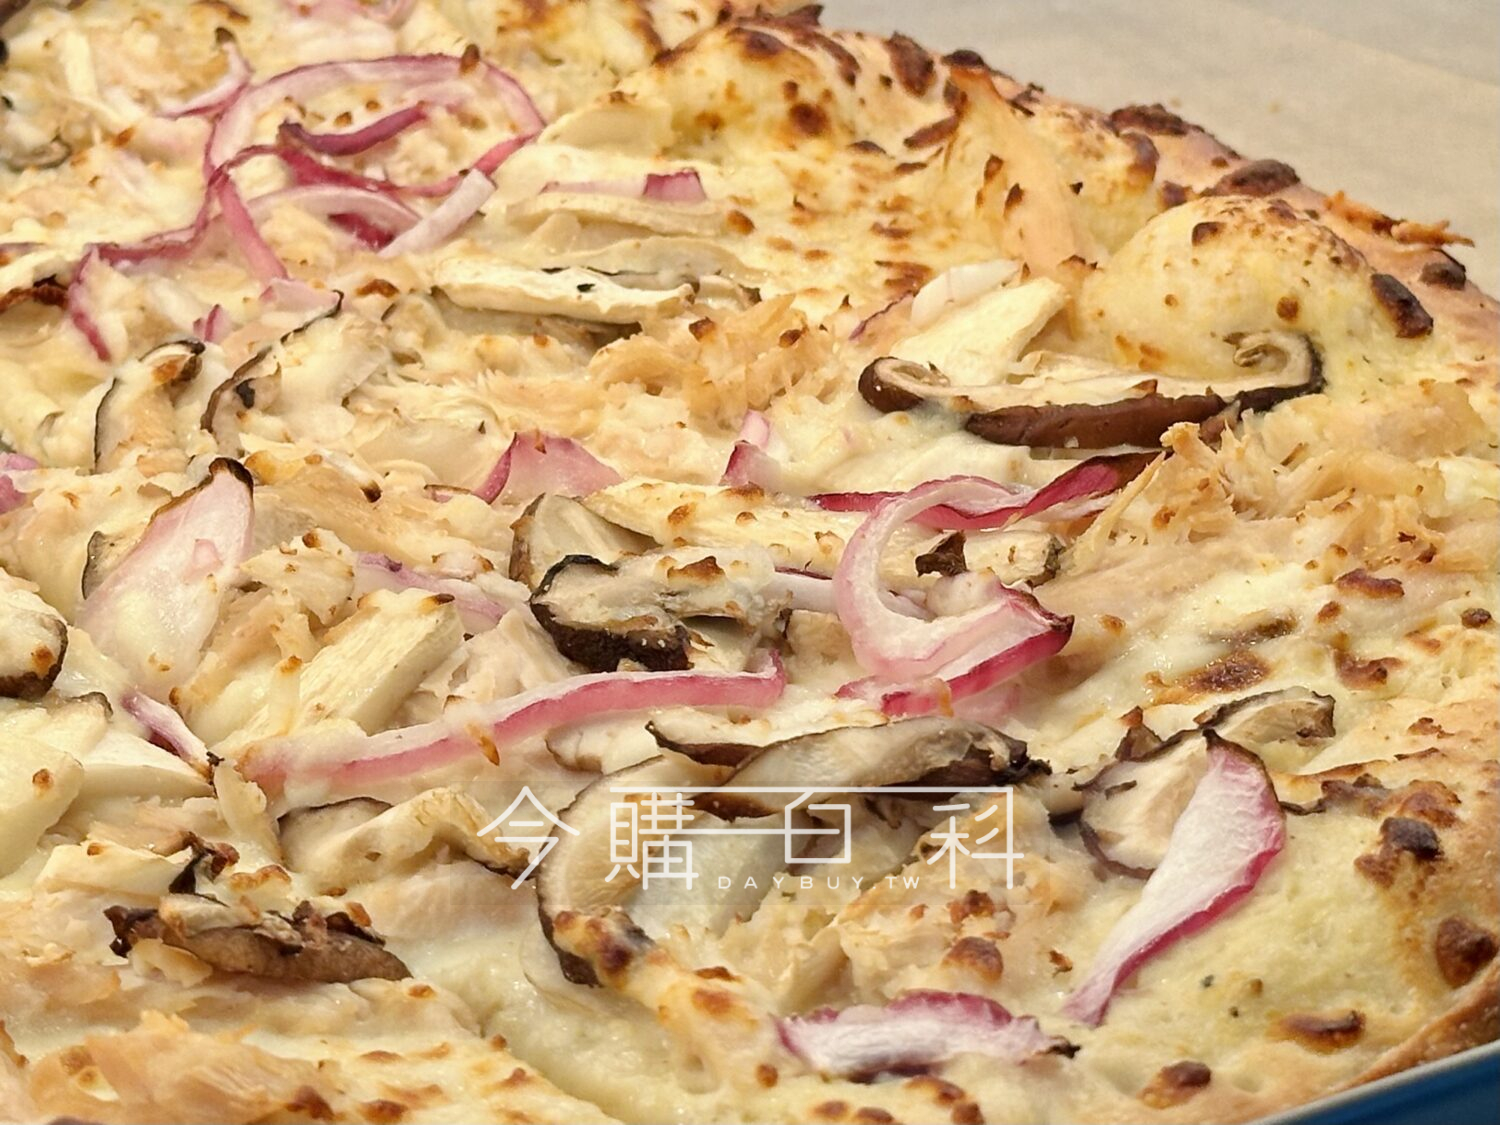 KIRKLAND SIGNATURE 科克蘭蕈菇雞肉(松露風味)披薩